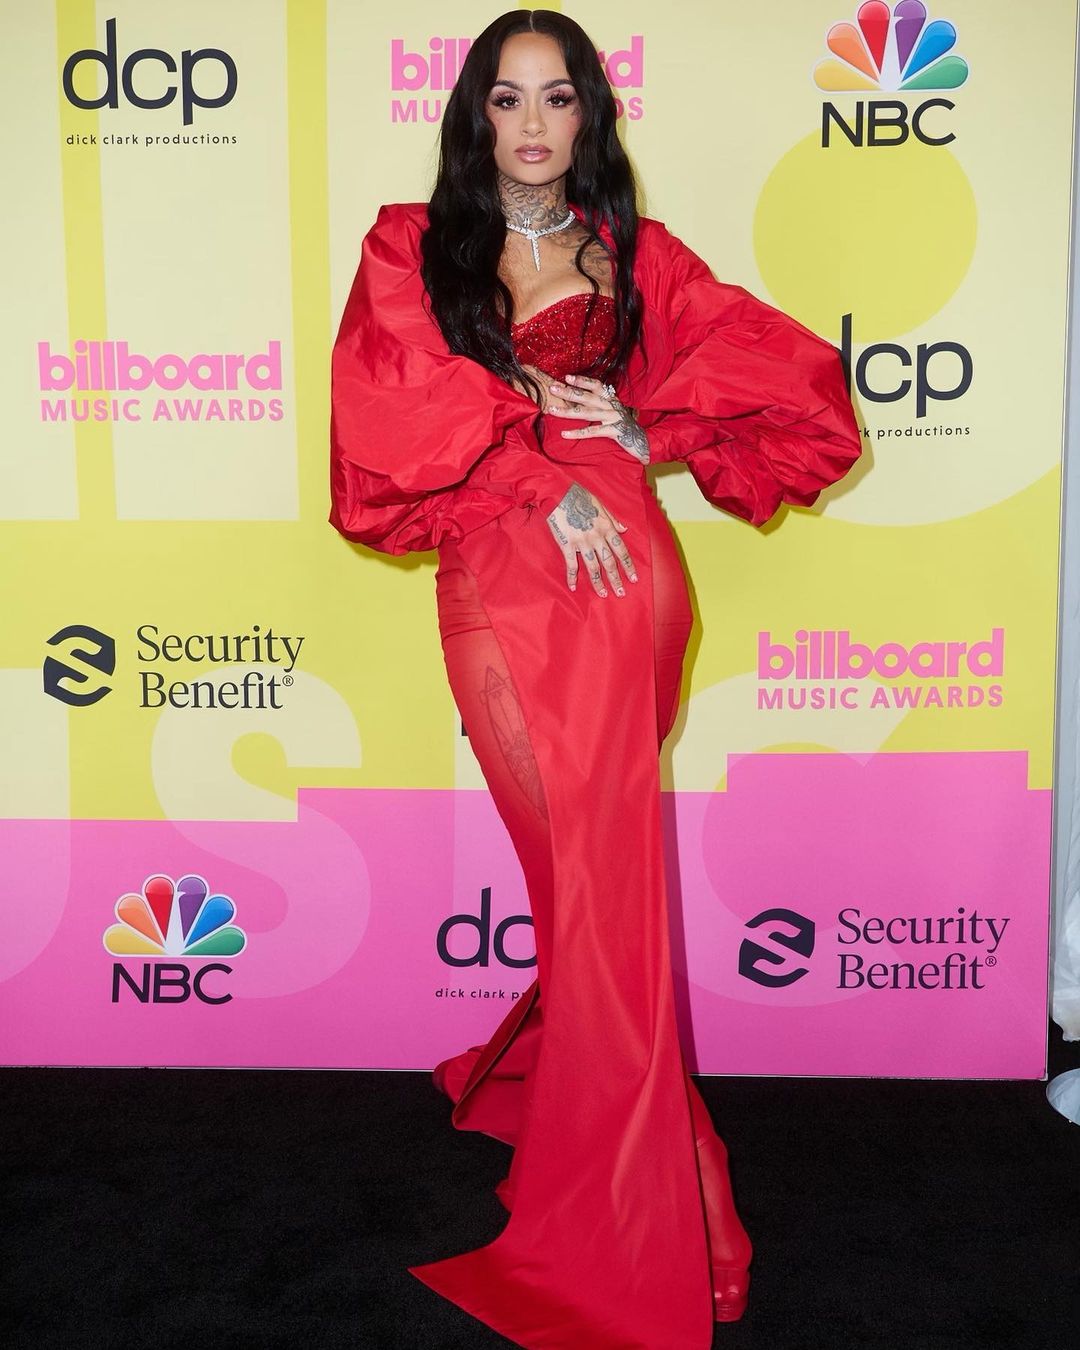 Пріянка Чопра, Меган Фокс і Пінк на червоному хіднику Billboard Music Awards 2021